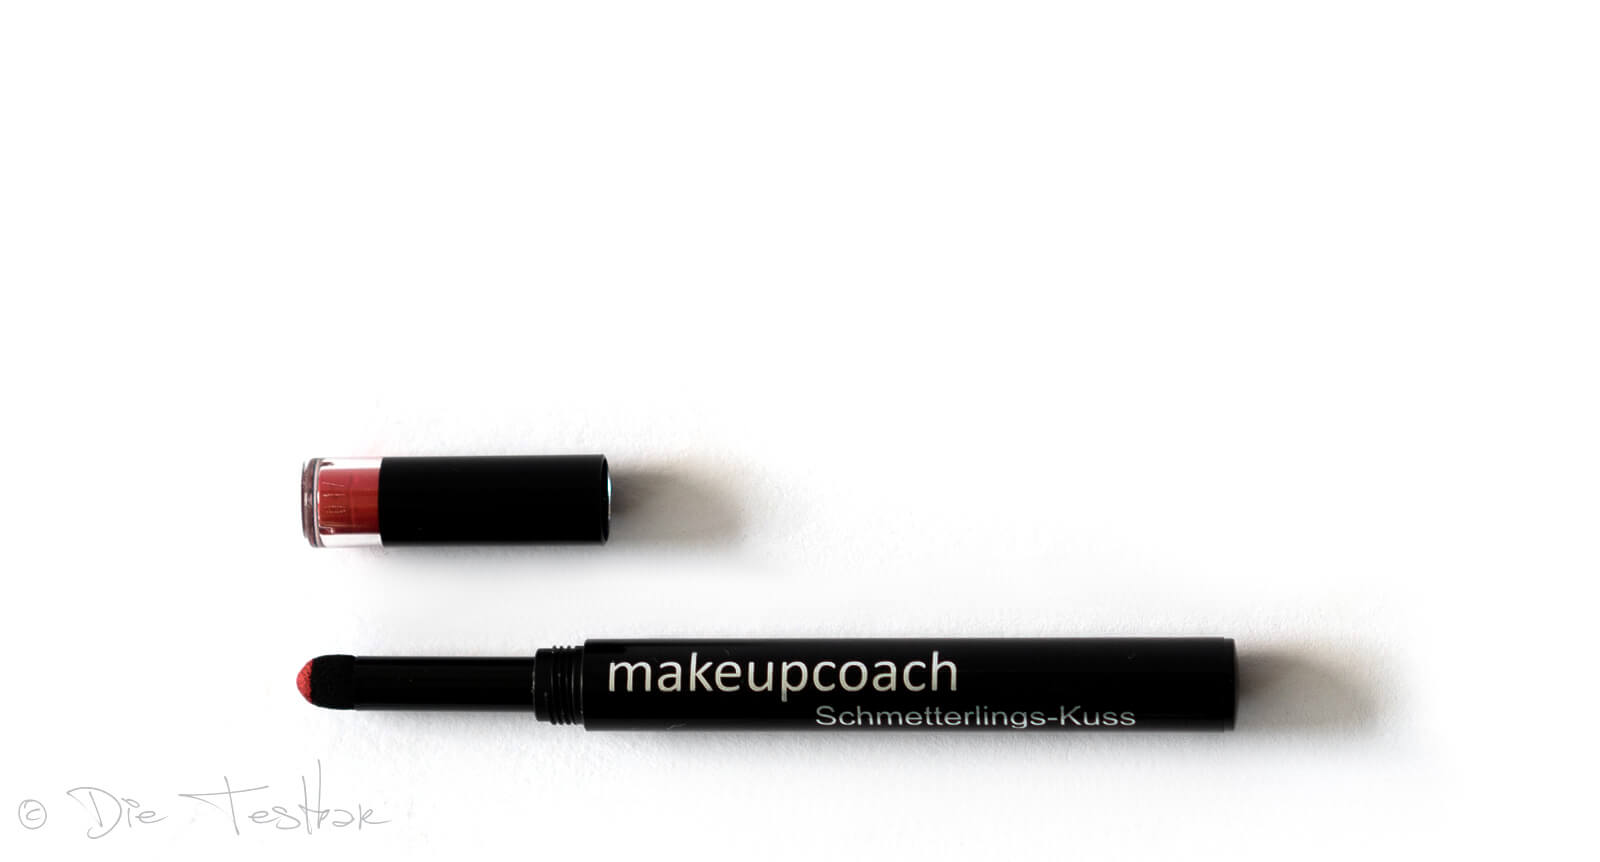 Für wunderschöne Lippen - Hochwertiges Lippen-Make-up vom makeupcoach 19